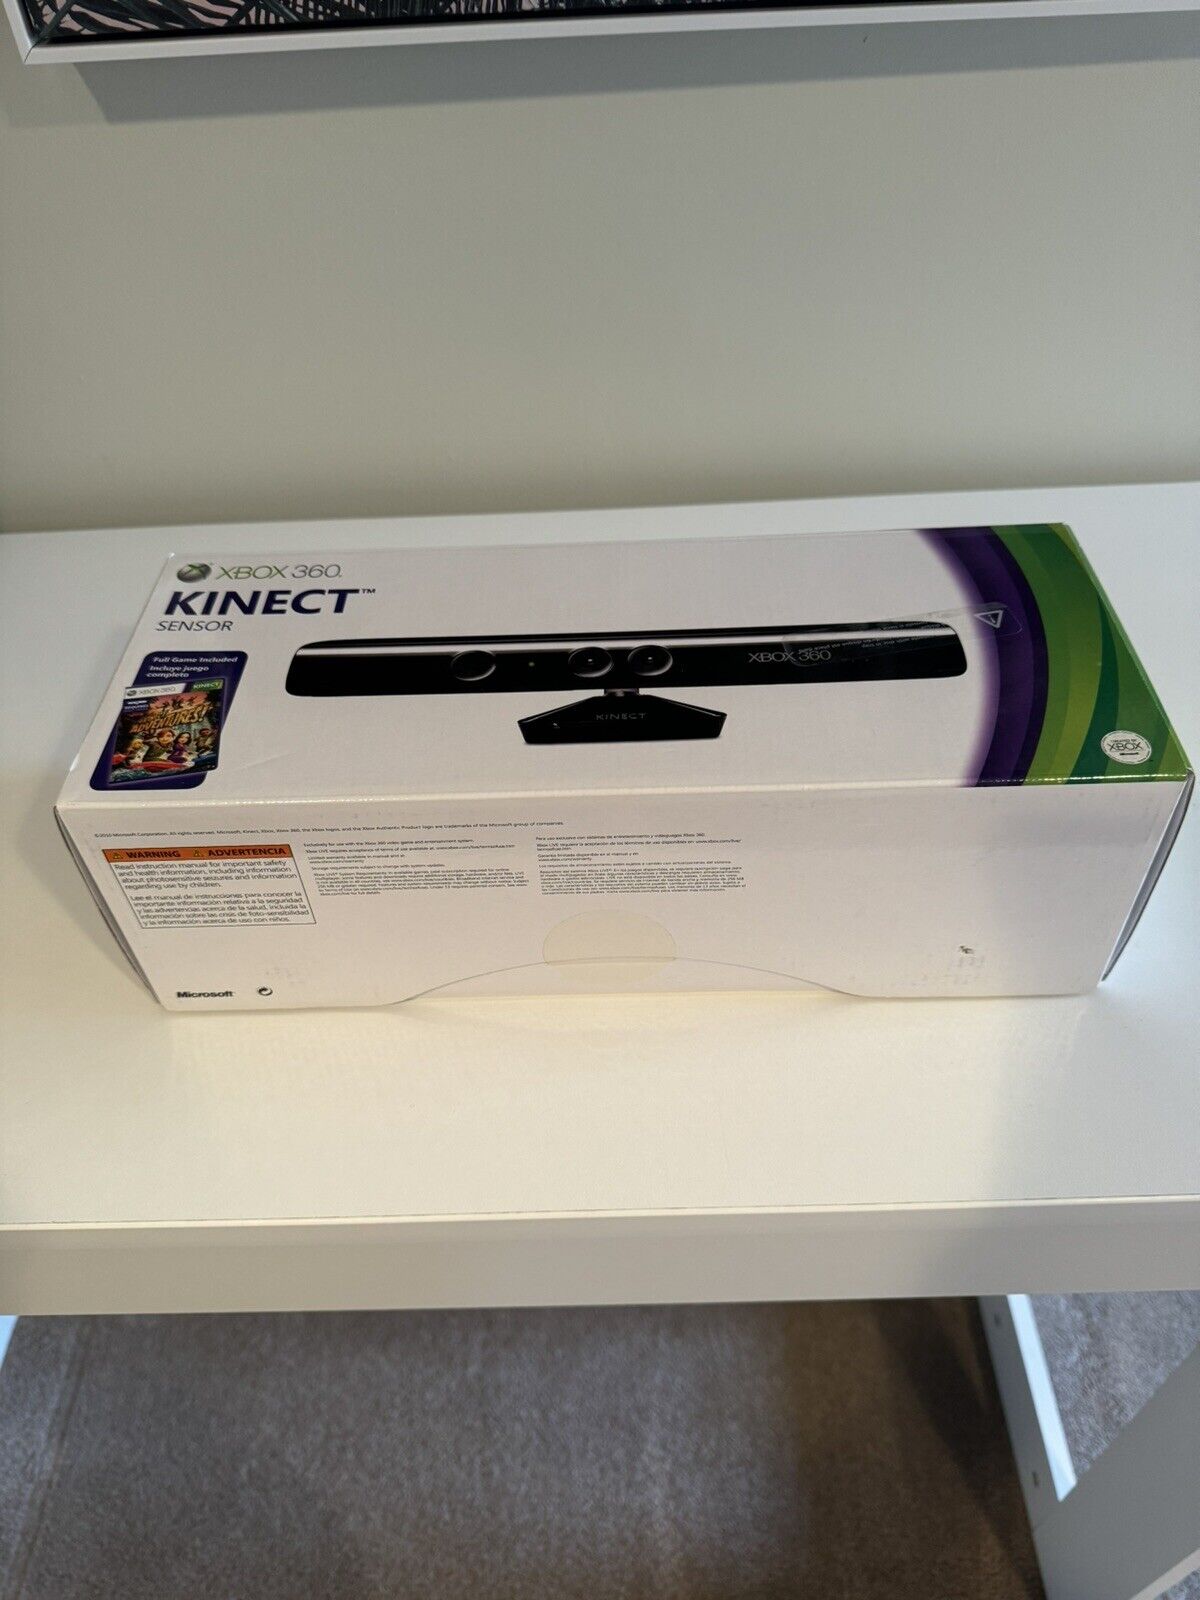 Beautiful XBox 360 Kinect Sensor (Model 1414) – (New Sealed Never Opened) on eBay